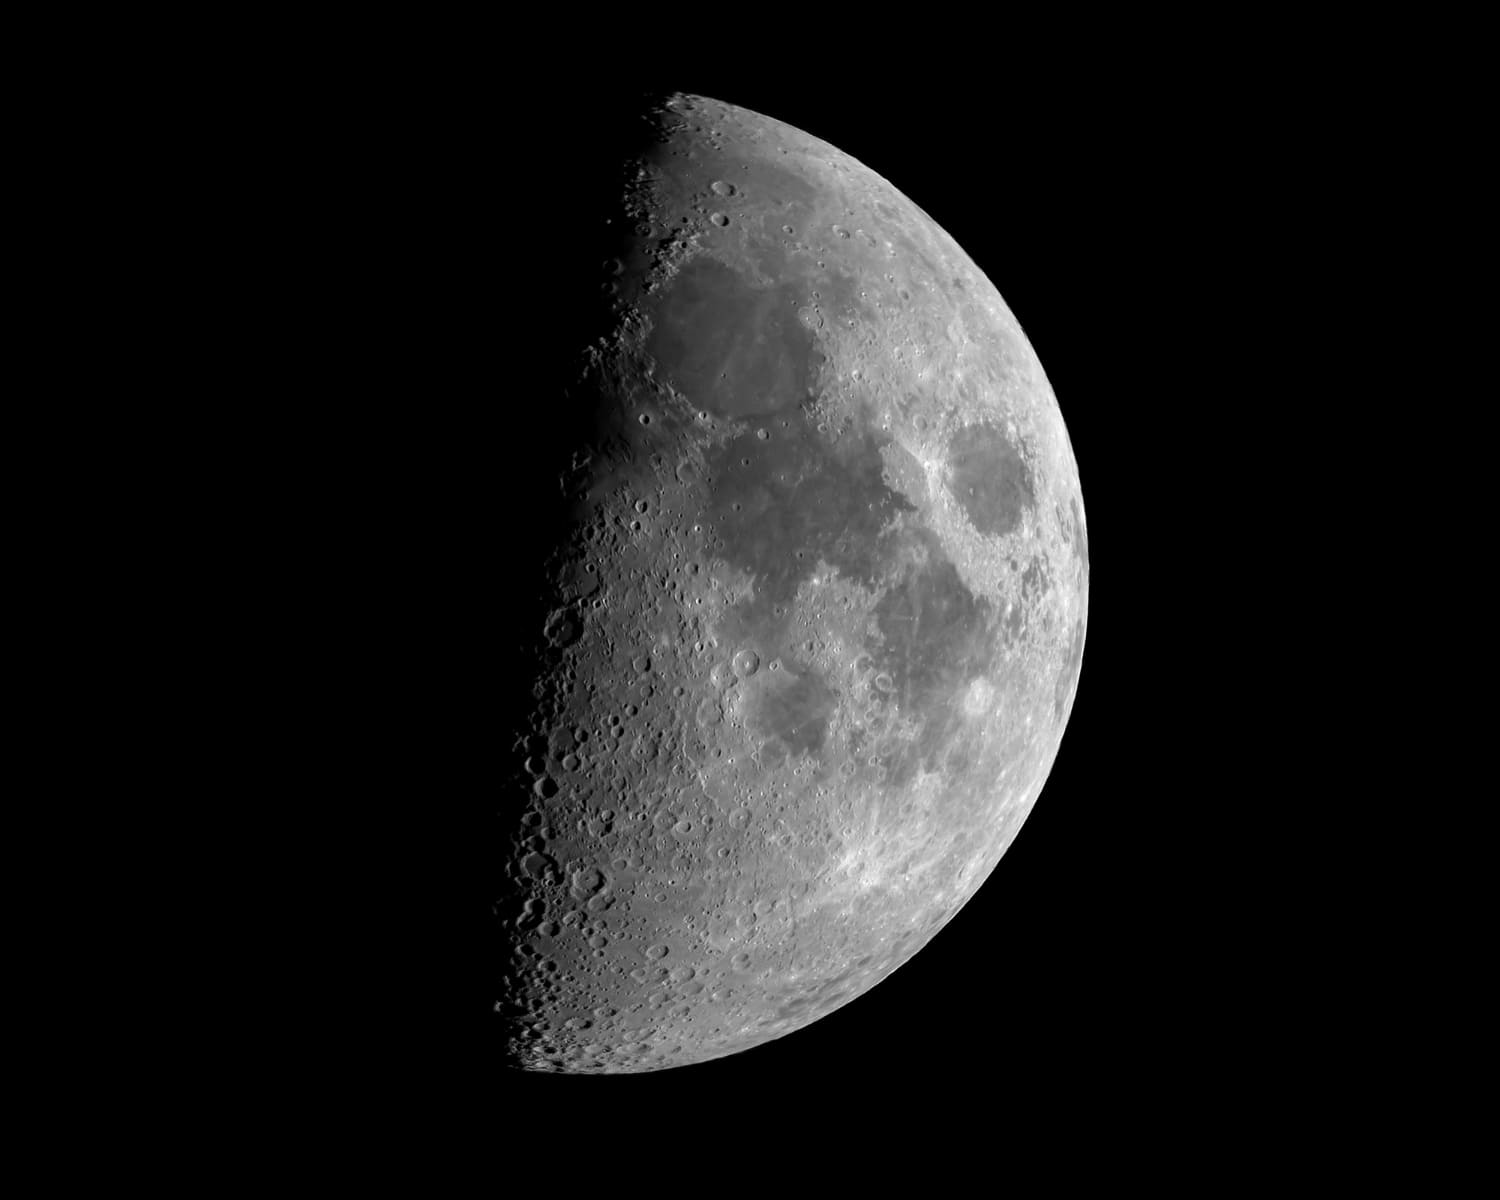 НАСА показало детализированное изображение южного полюса Луны